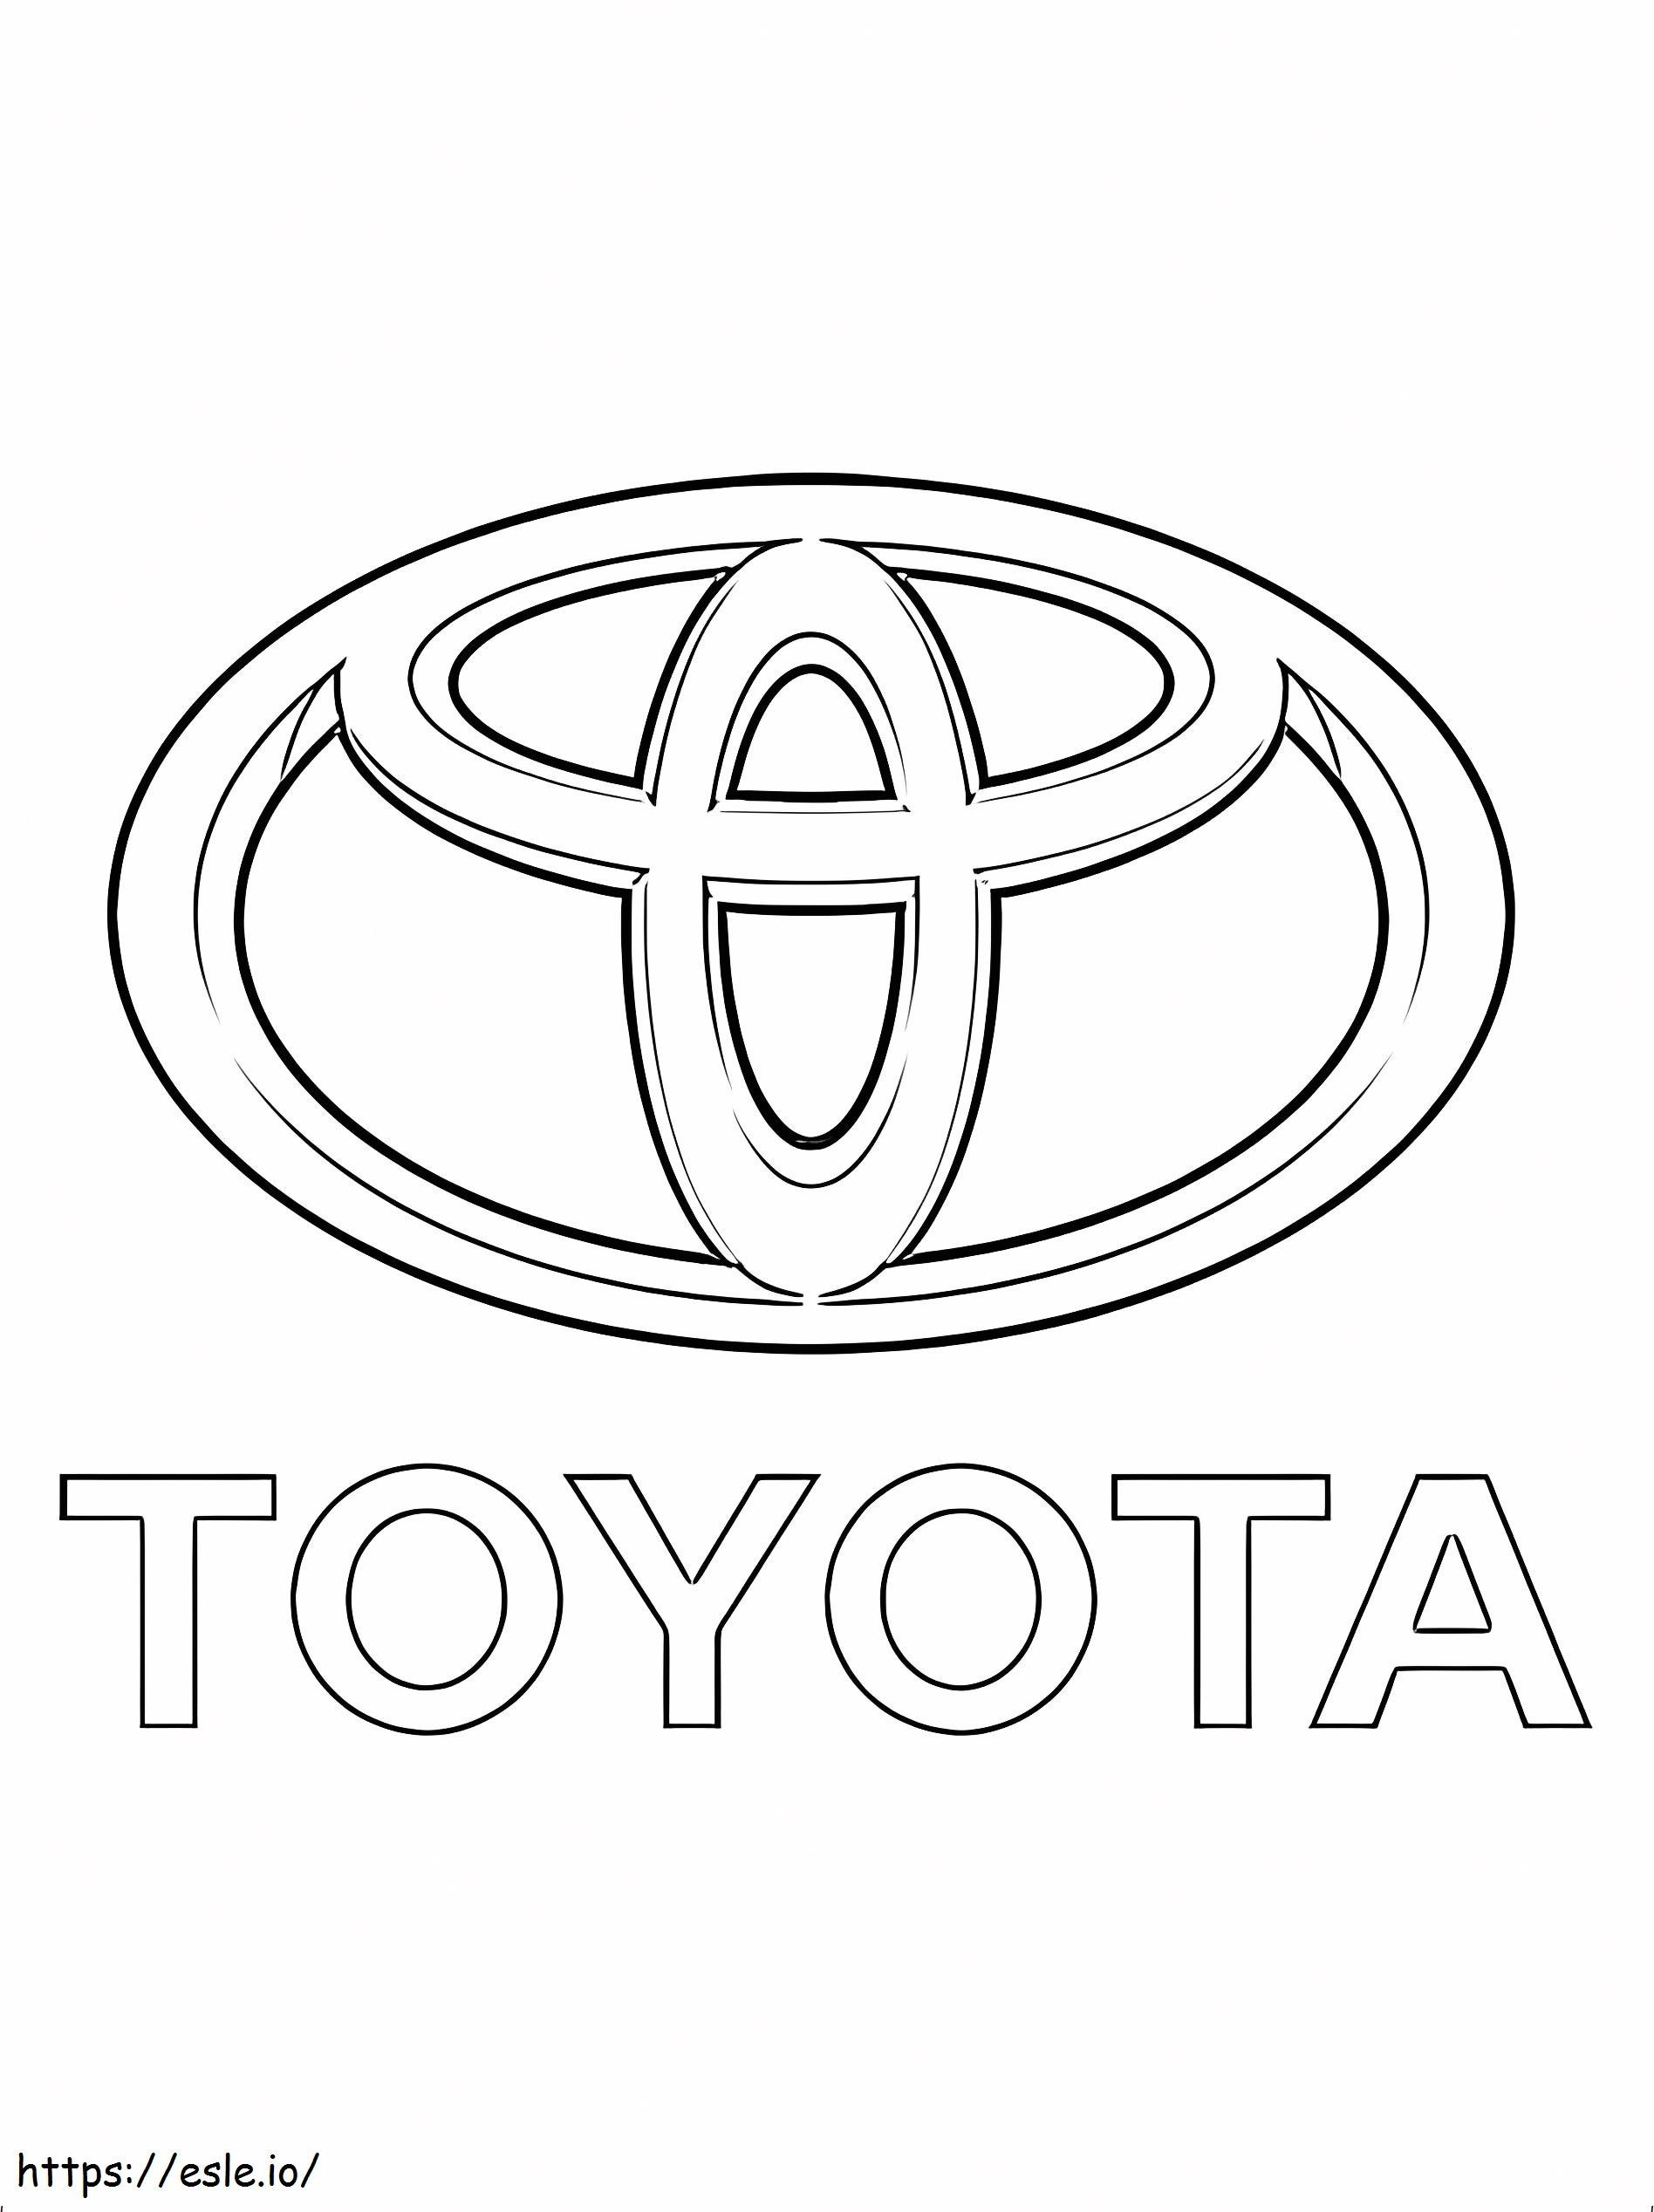 Toyota-logo kleurplaat kleurplaat